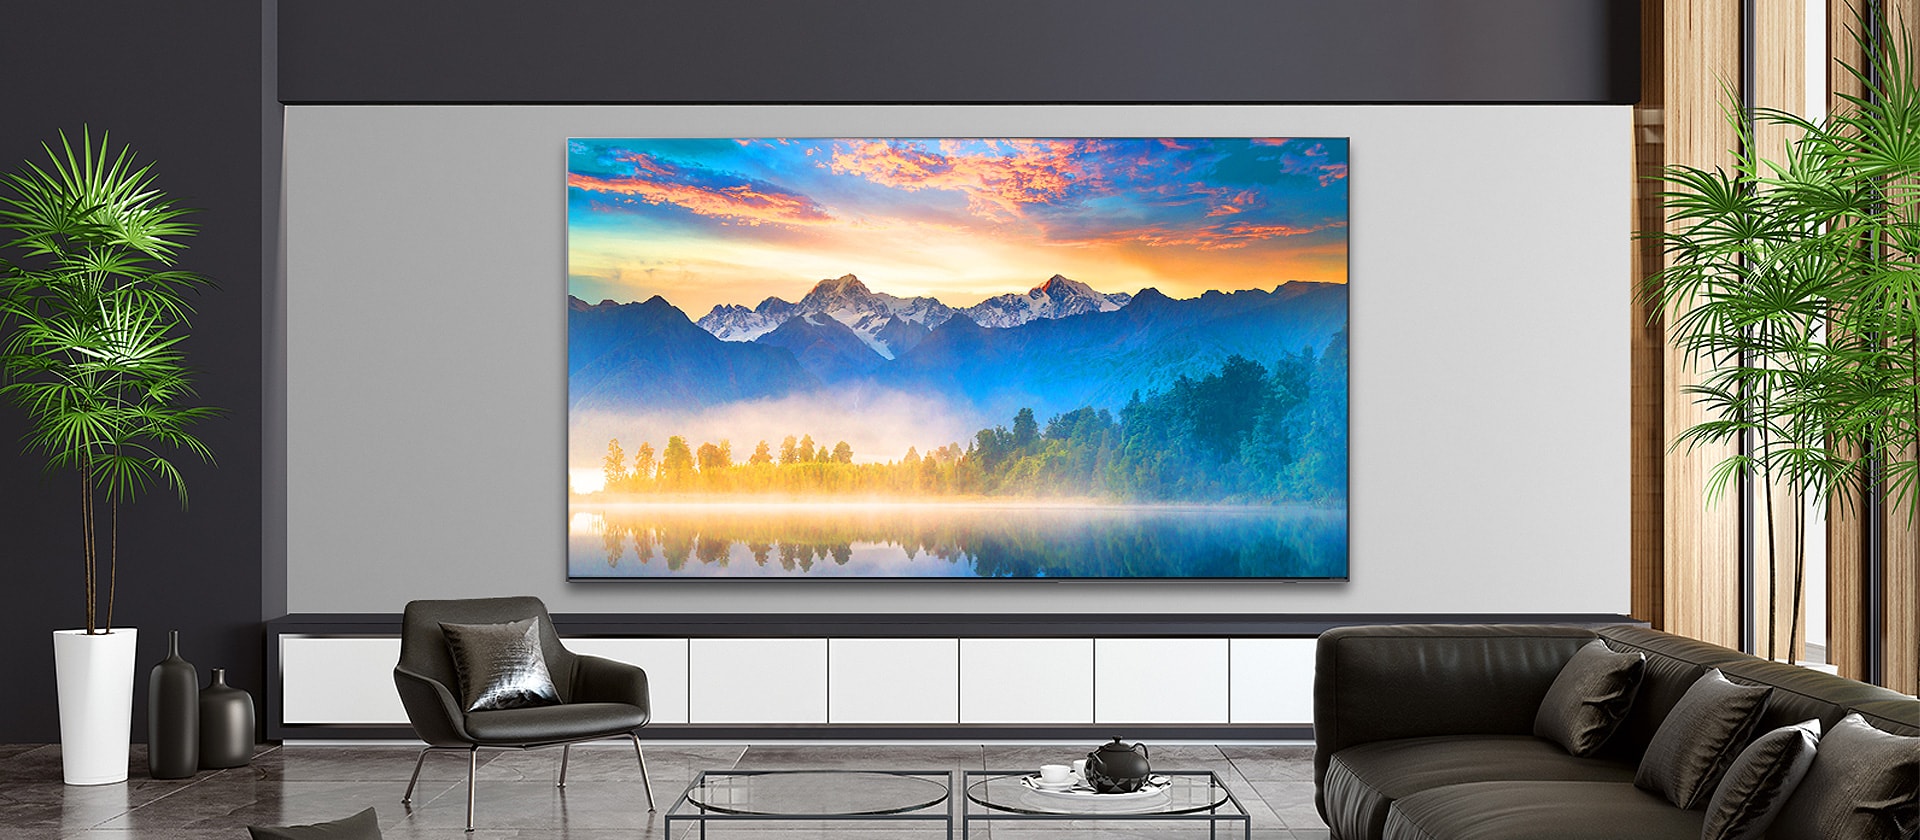 Ein Wohnzimmer mit einem an der Wand montierten Fernseher, der eine Naturszene darstellt